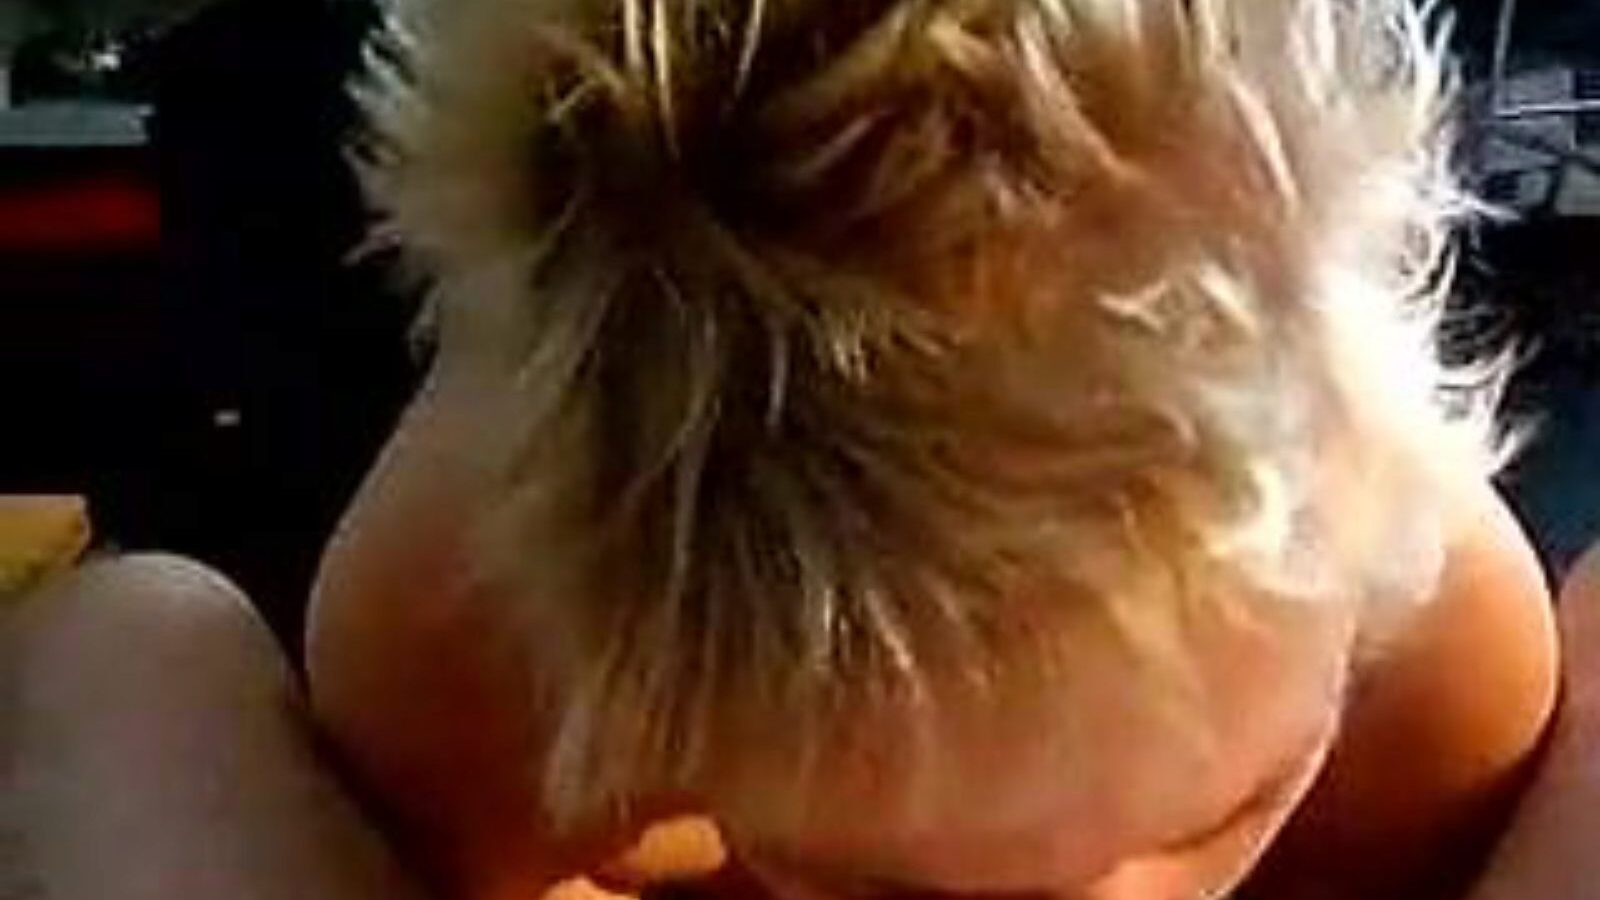 leuke dame: video porno casero y de viejas a6 - xhamster mira la película de leuke dame tube fuckfest gratis en xhamster, con la colección más caliente de videos porno holandeses caseros, de viejas y chupadores